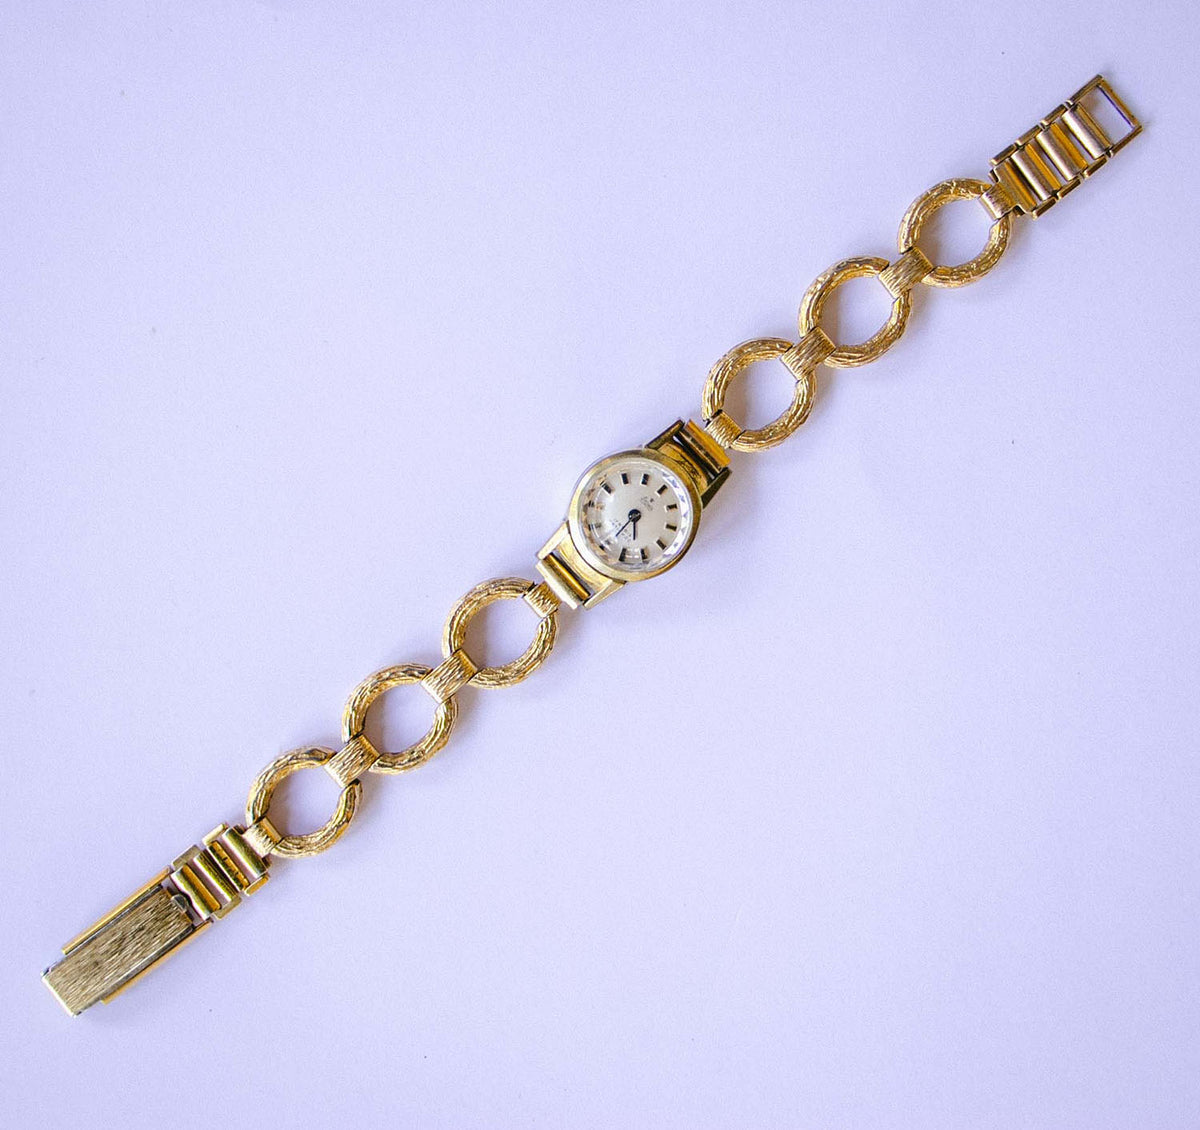 Stowa 17 Rubis Antichoc Watch | Luxury Gold-tone Vintage Ladies Watch ...